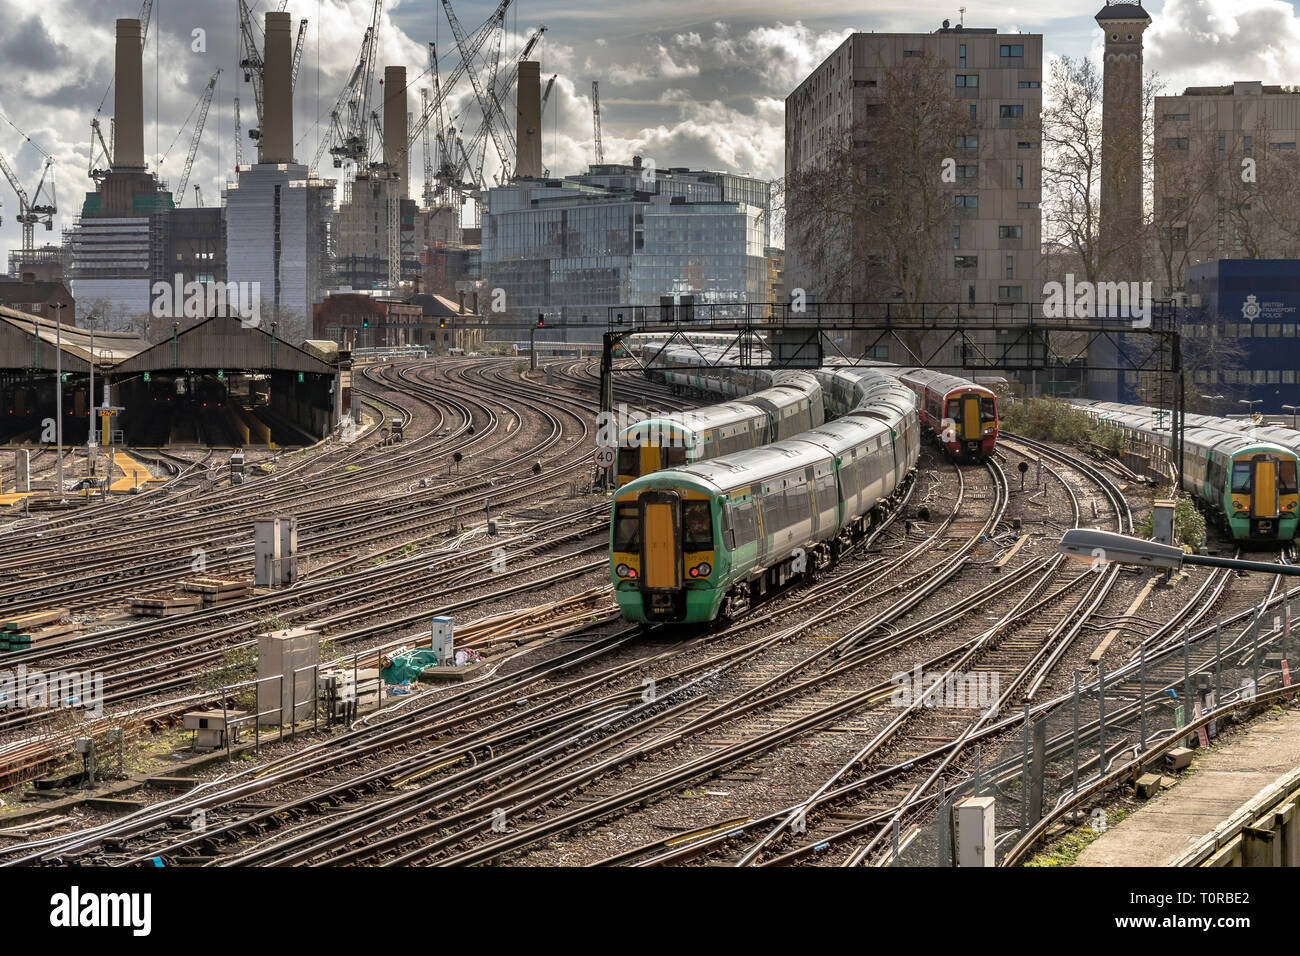 Train Southern Rail approchant Ebury Bridge sur l'approche finale de la gare Victoria, avec Battersea Power Station dans la distance, Londres, Royaume-Uni Banque D'Images